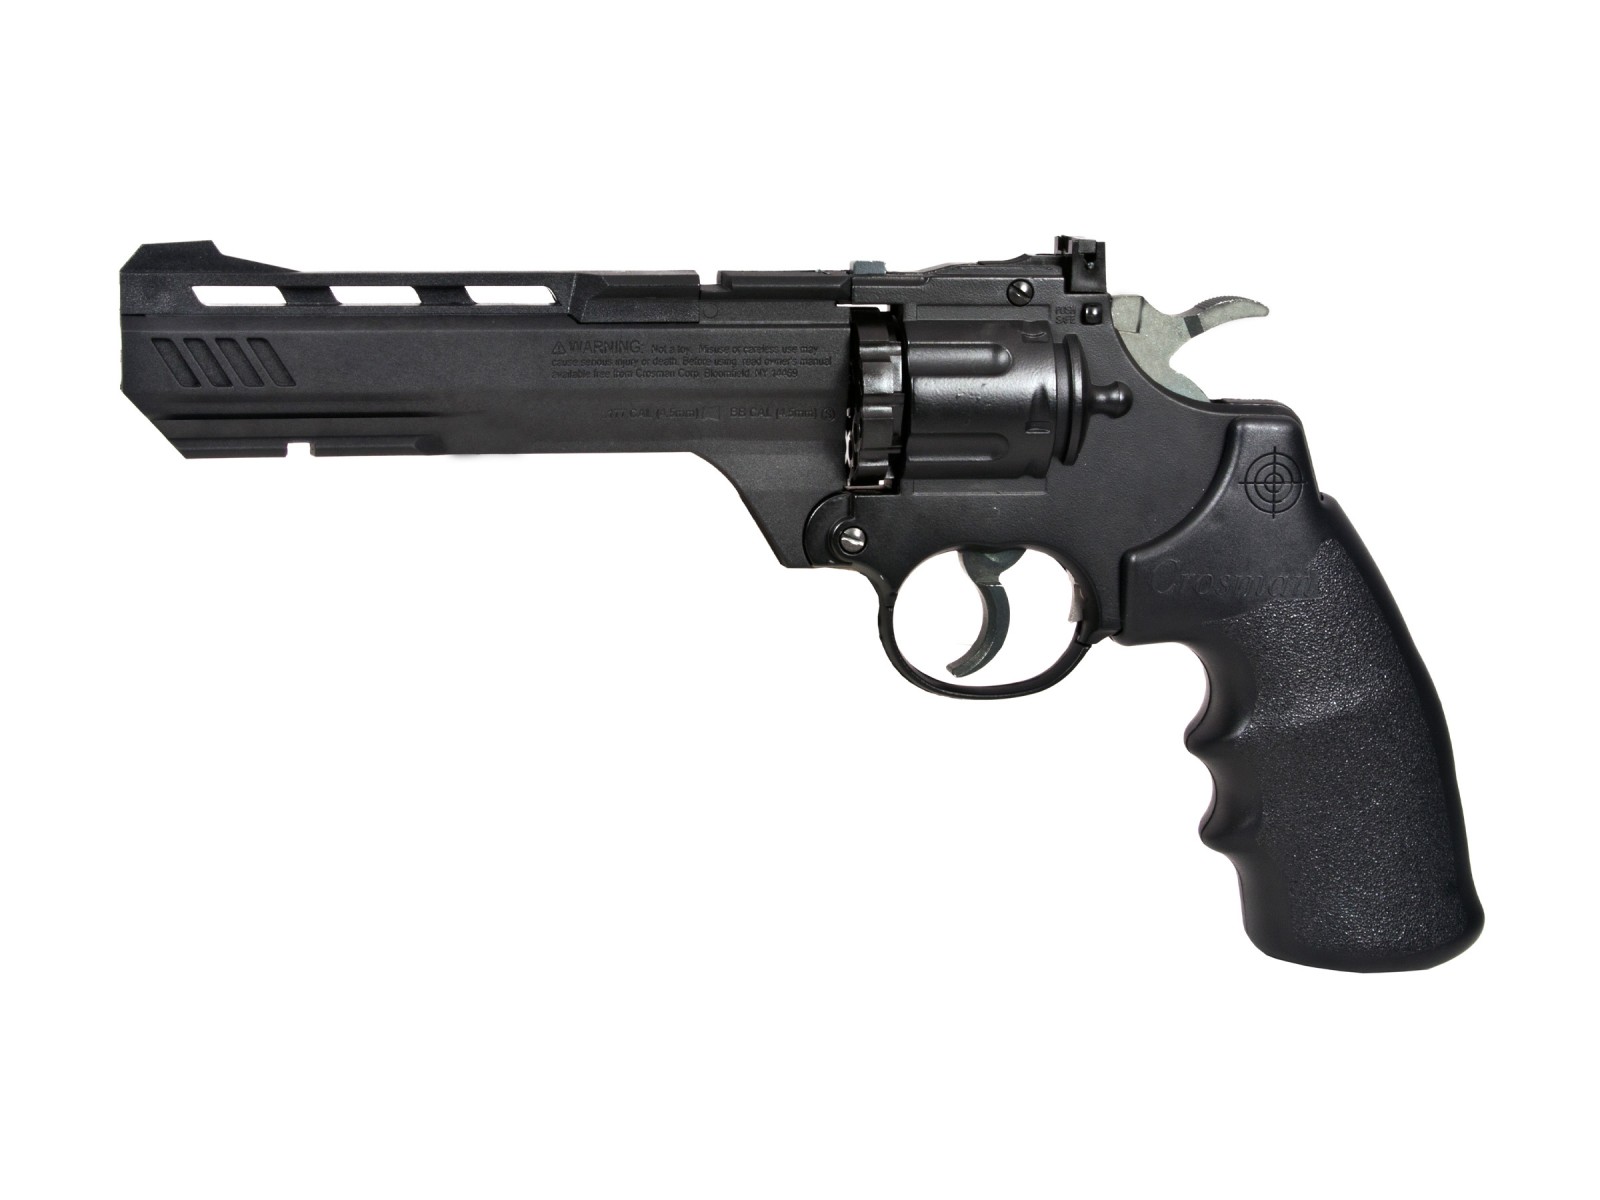 Crosman Vigilante CO2 Revolver